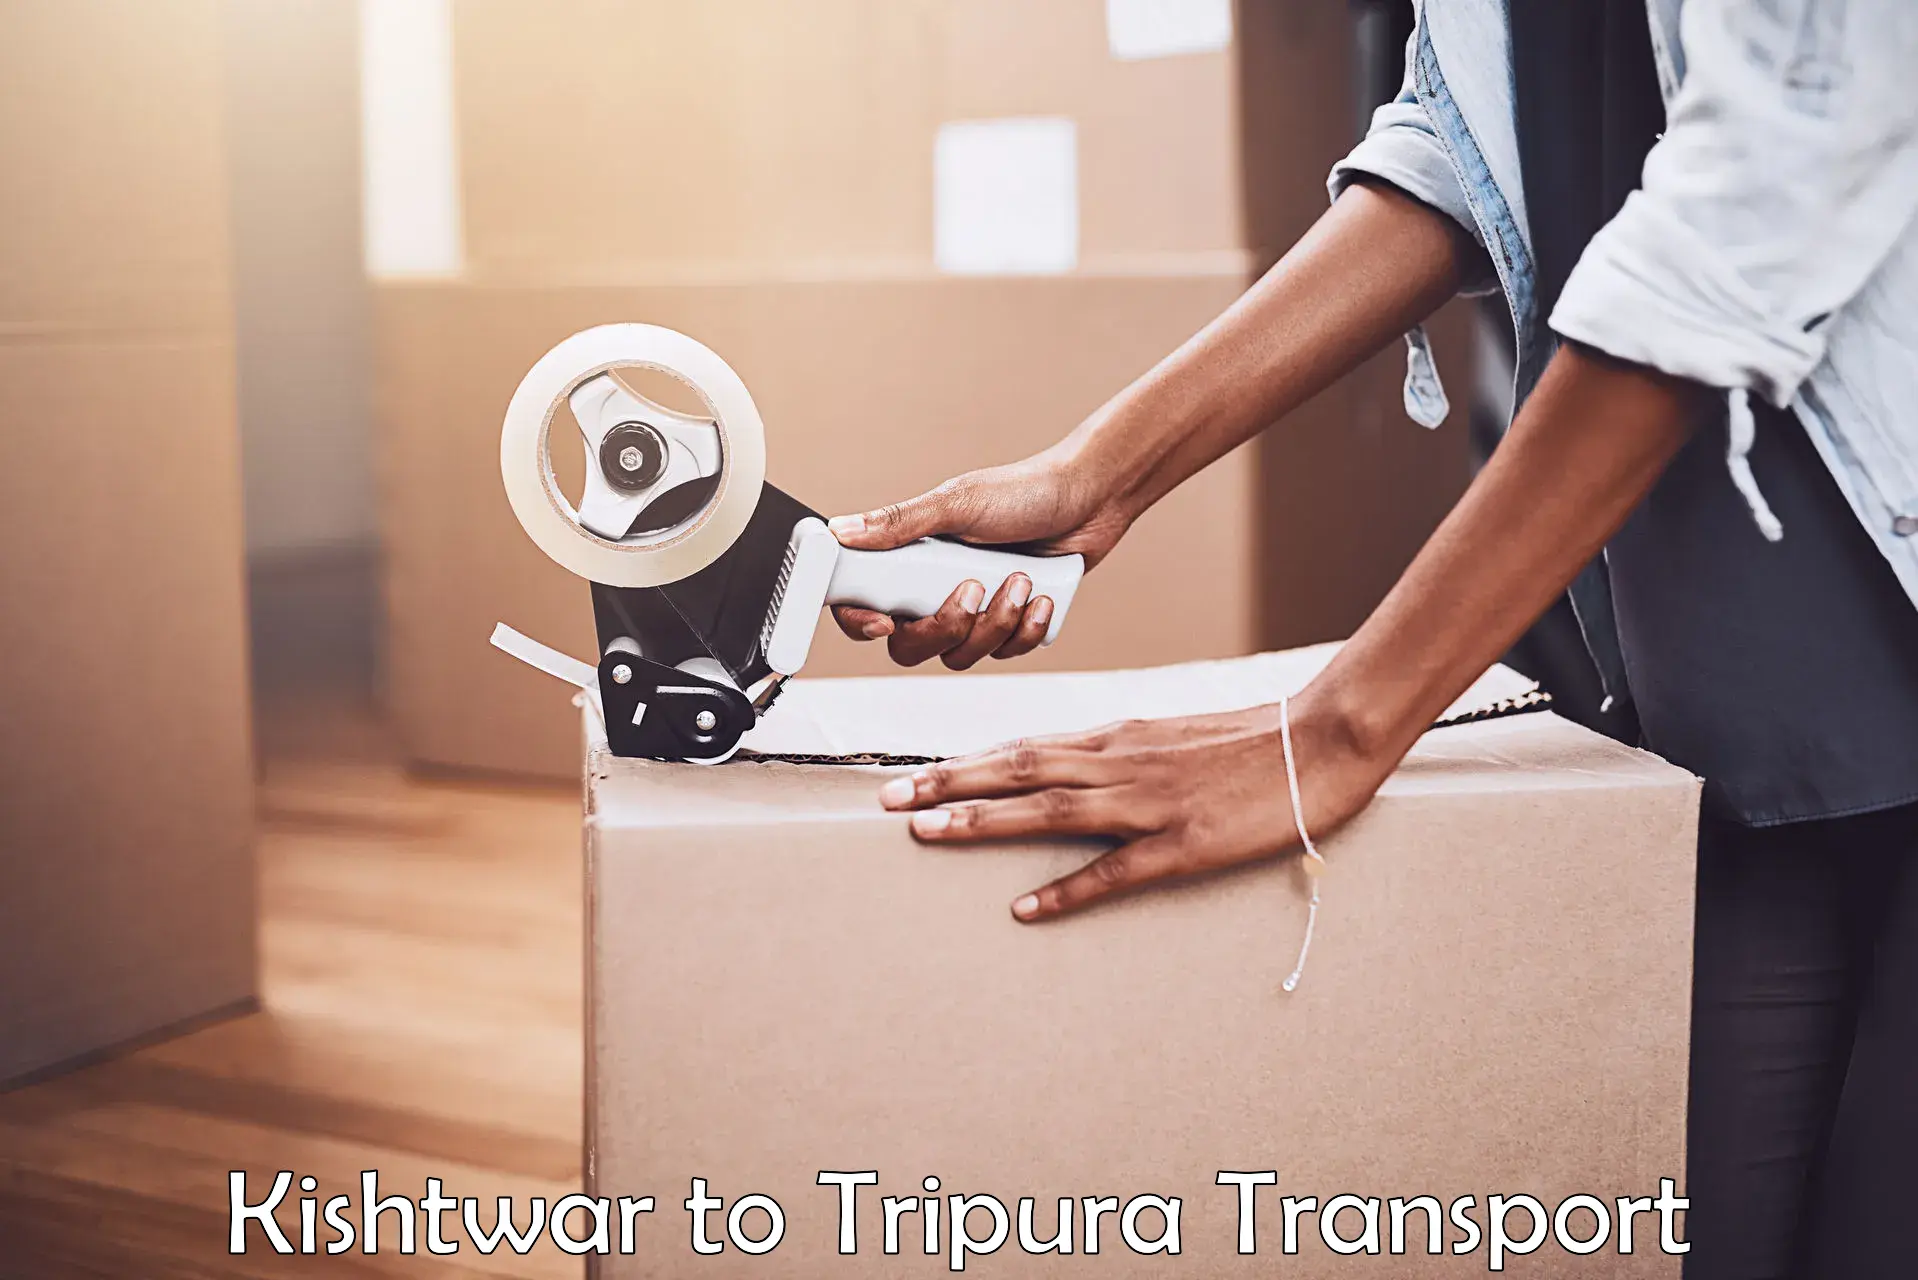 Transport in sharing Kishtwar to Tripura